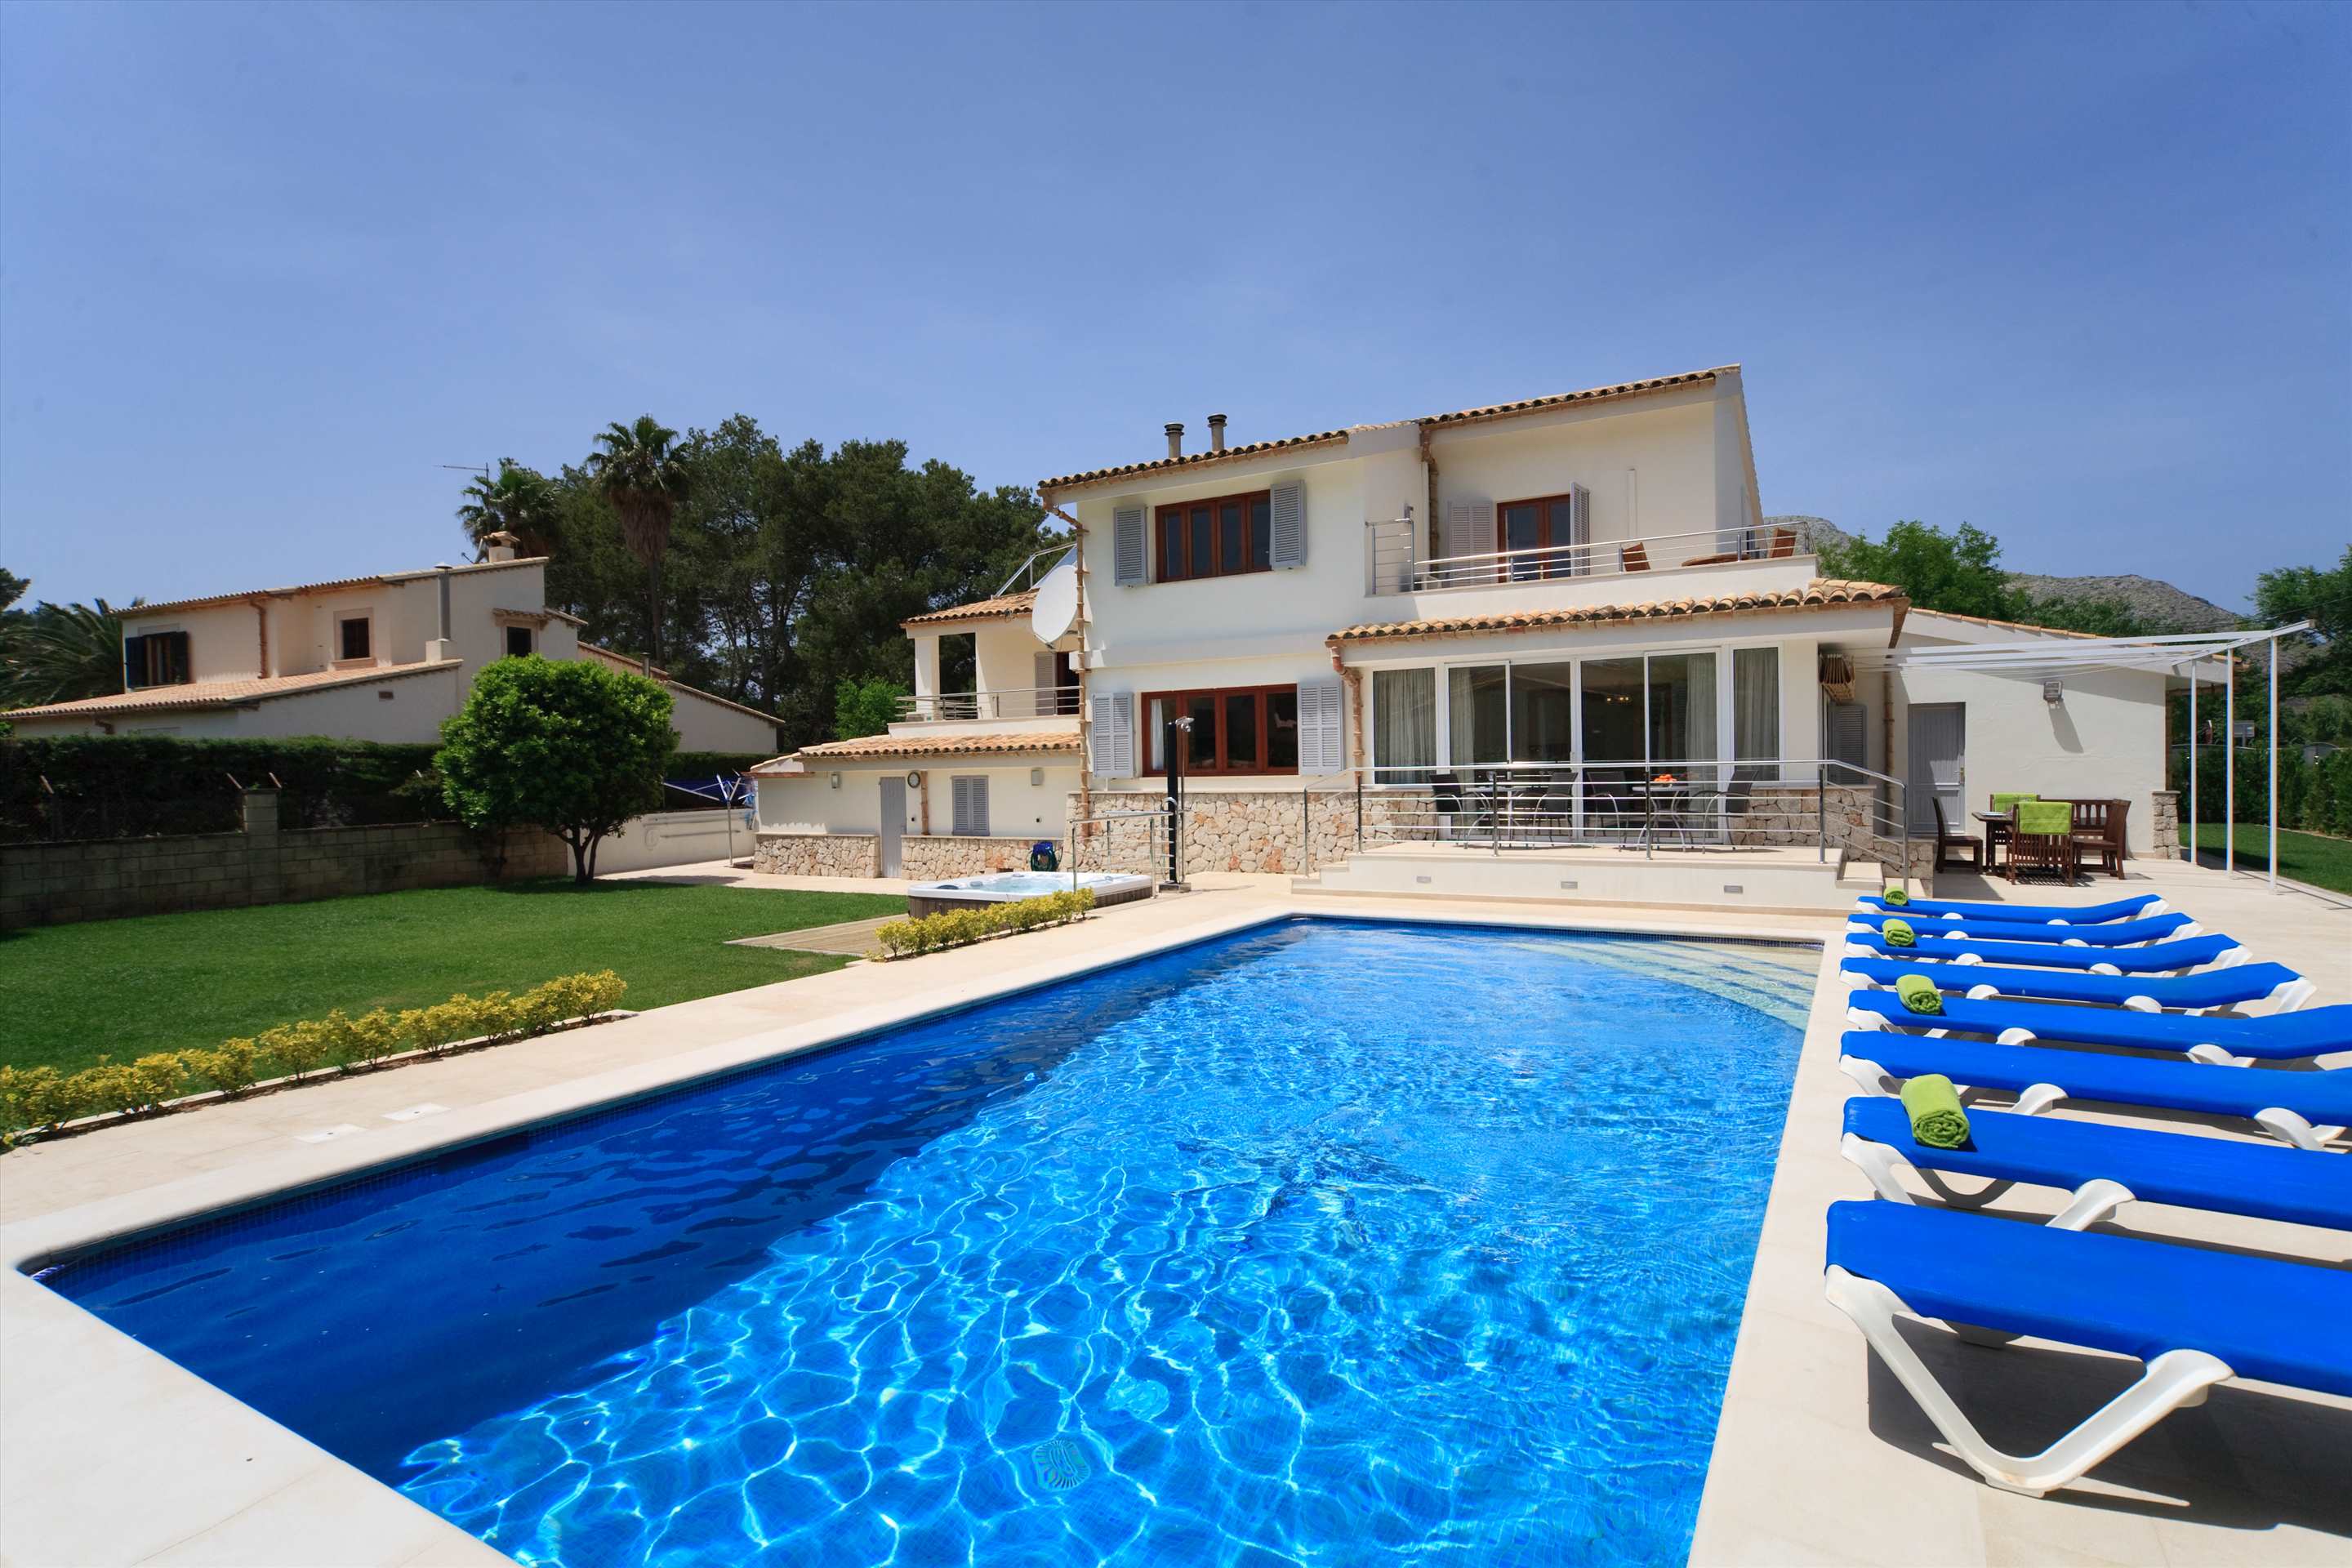 Villa Ca’n Barbas, 4 bedroom villa in Pollensa & Puerto Pollensa, Majorca